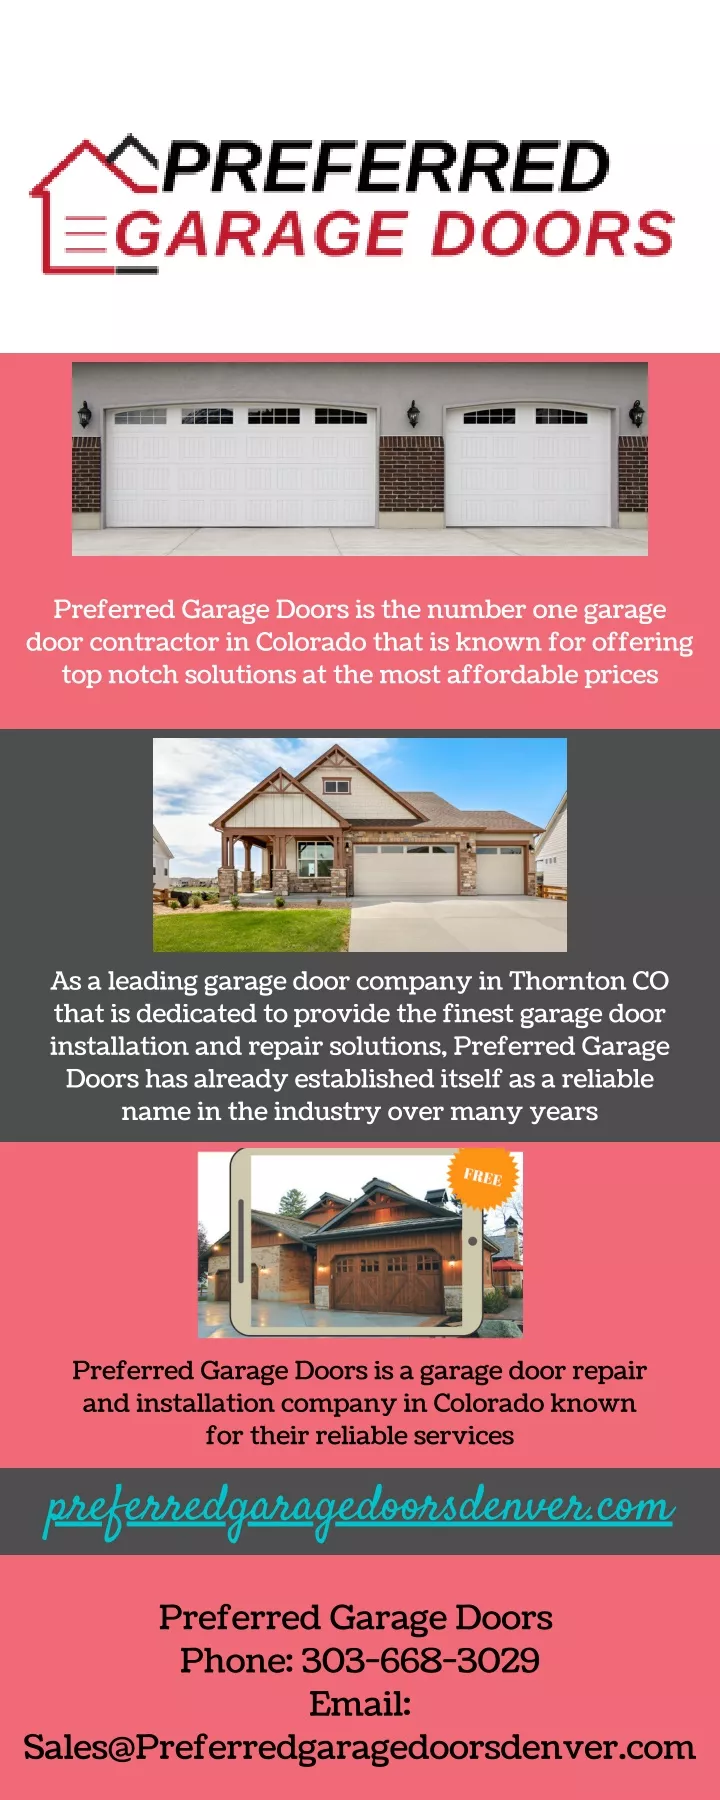 preferred garage doors is the number one garage